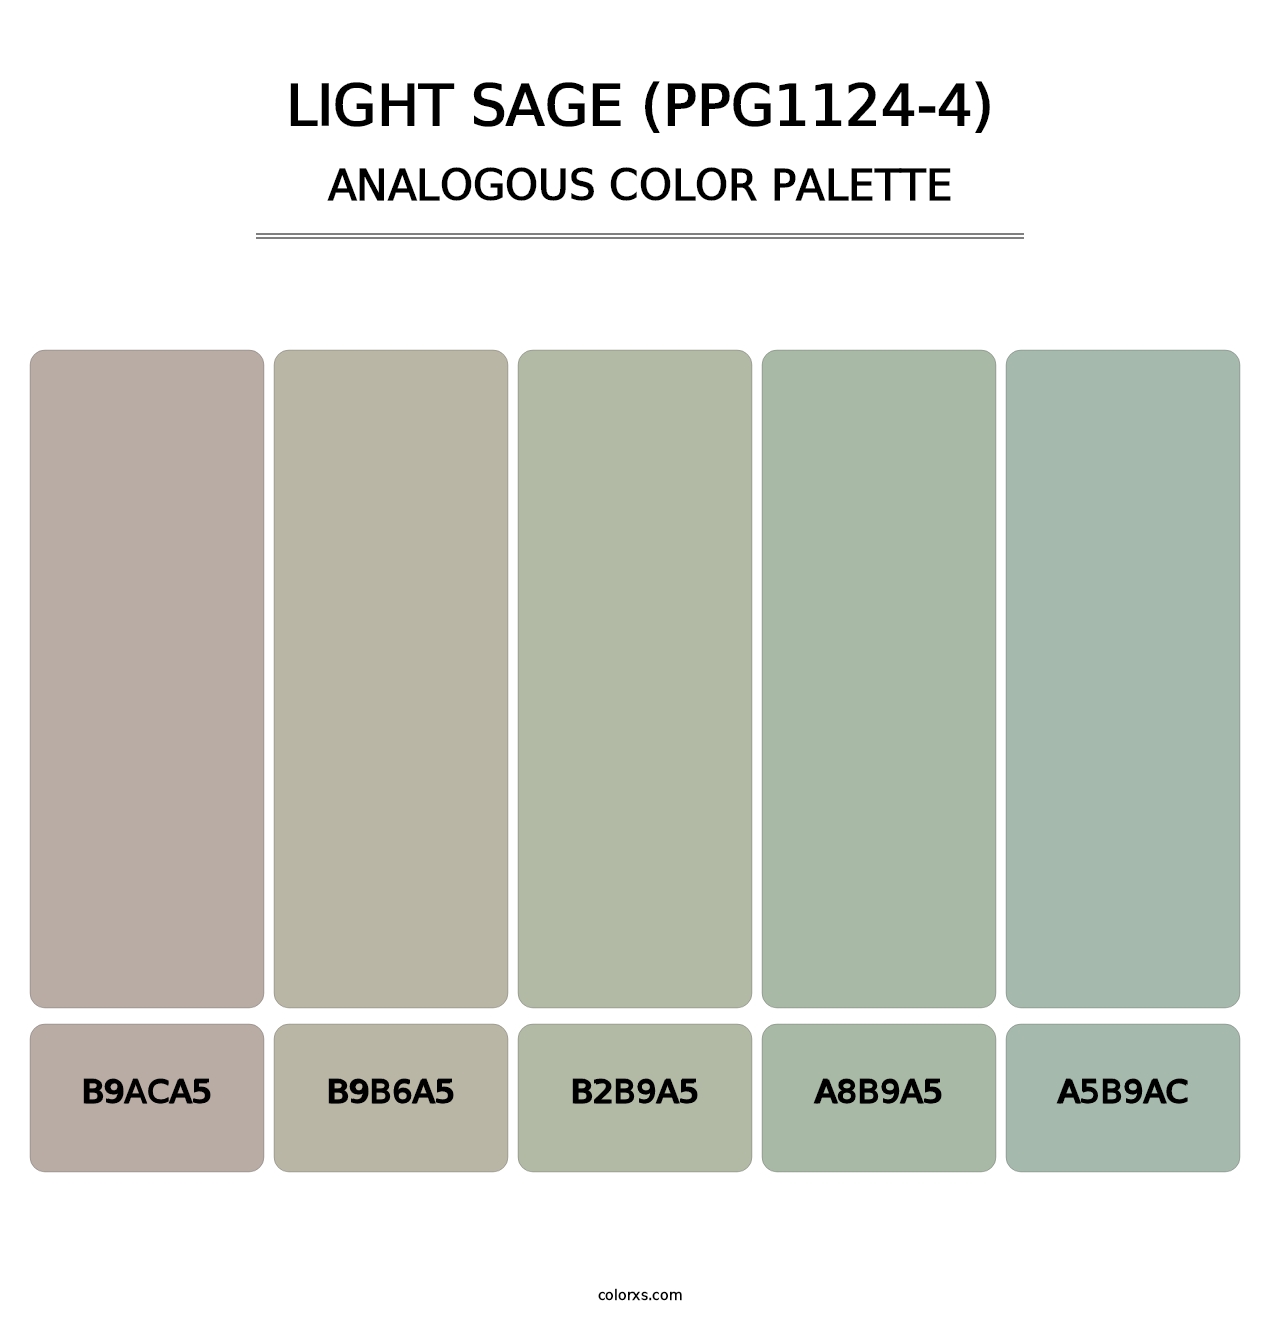 Light Sage (PPG1124-4) - Analogous Color Palette